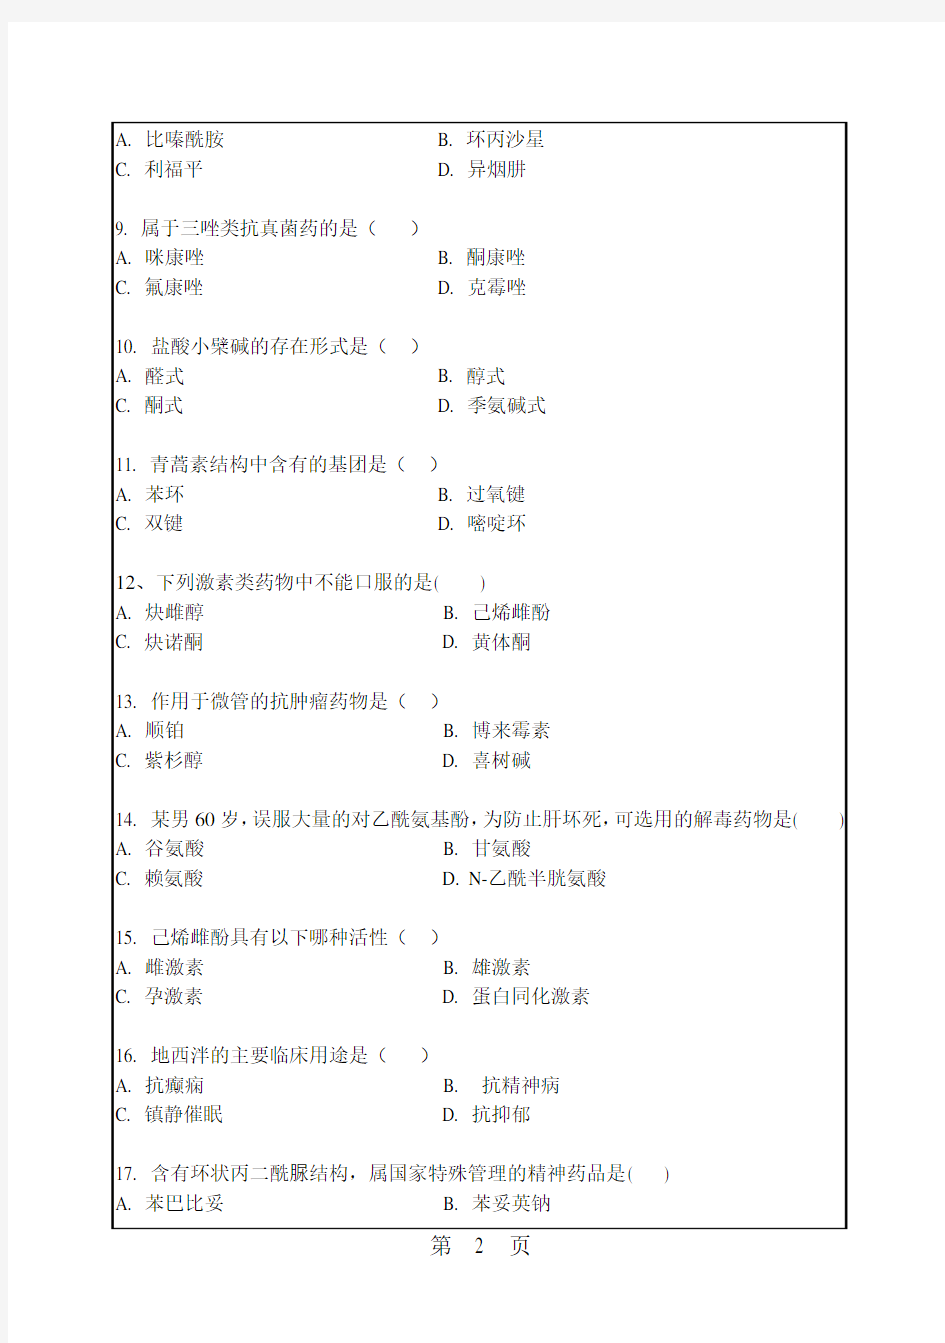 华南理工大学考研试题2016年-2018年647药物化学